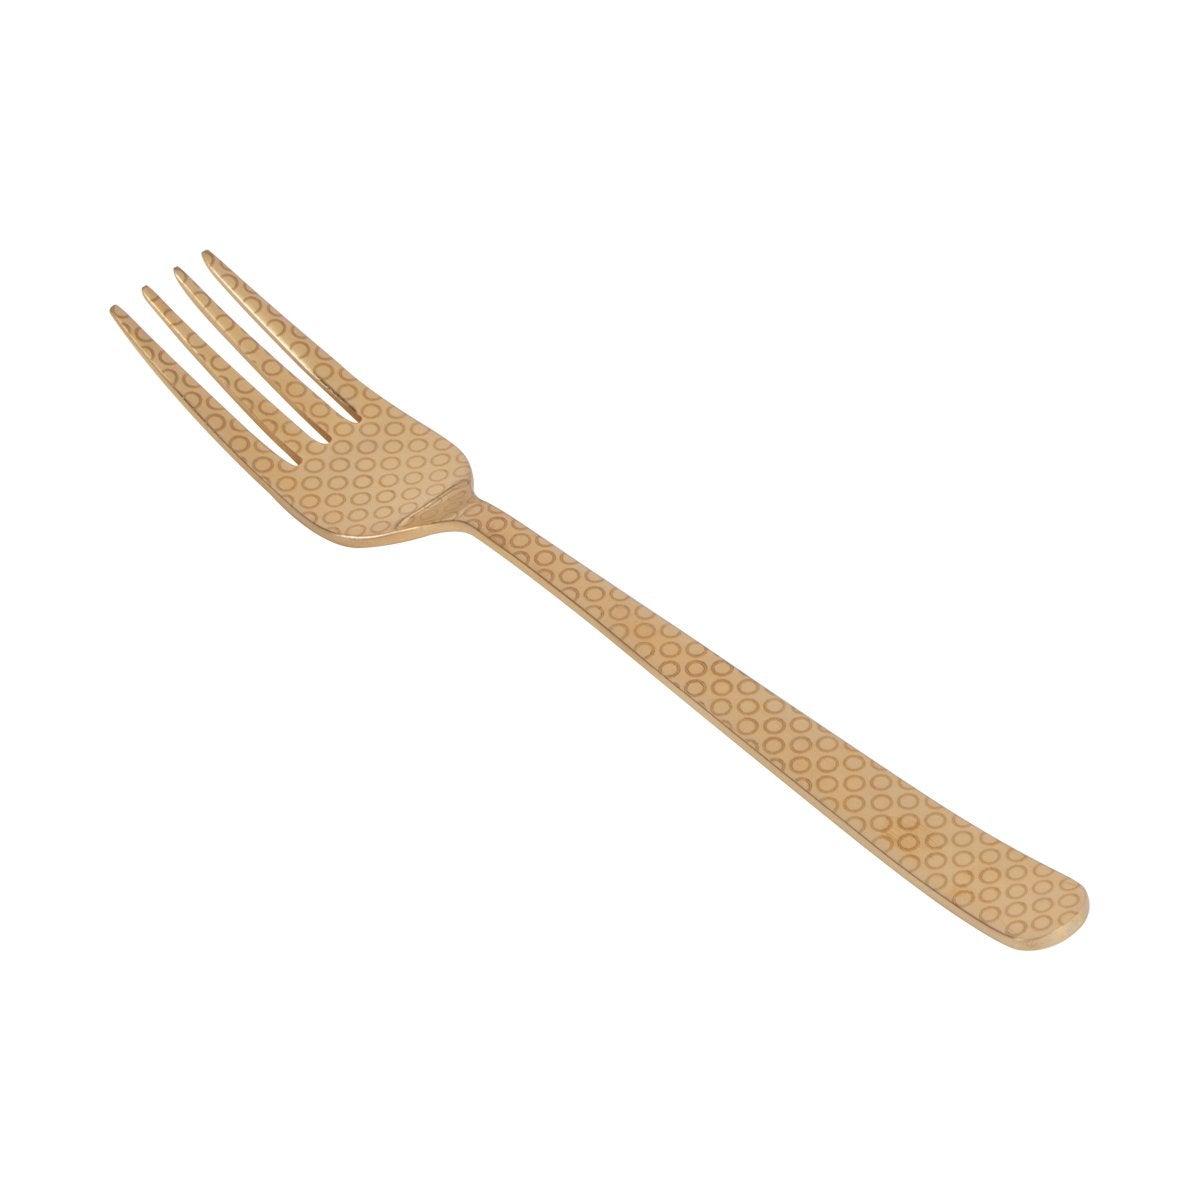 Herdmar Golden Metal Oslo Printed Cutlery - Set of 24